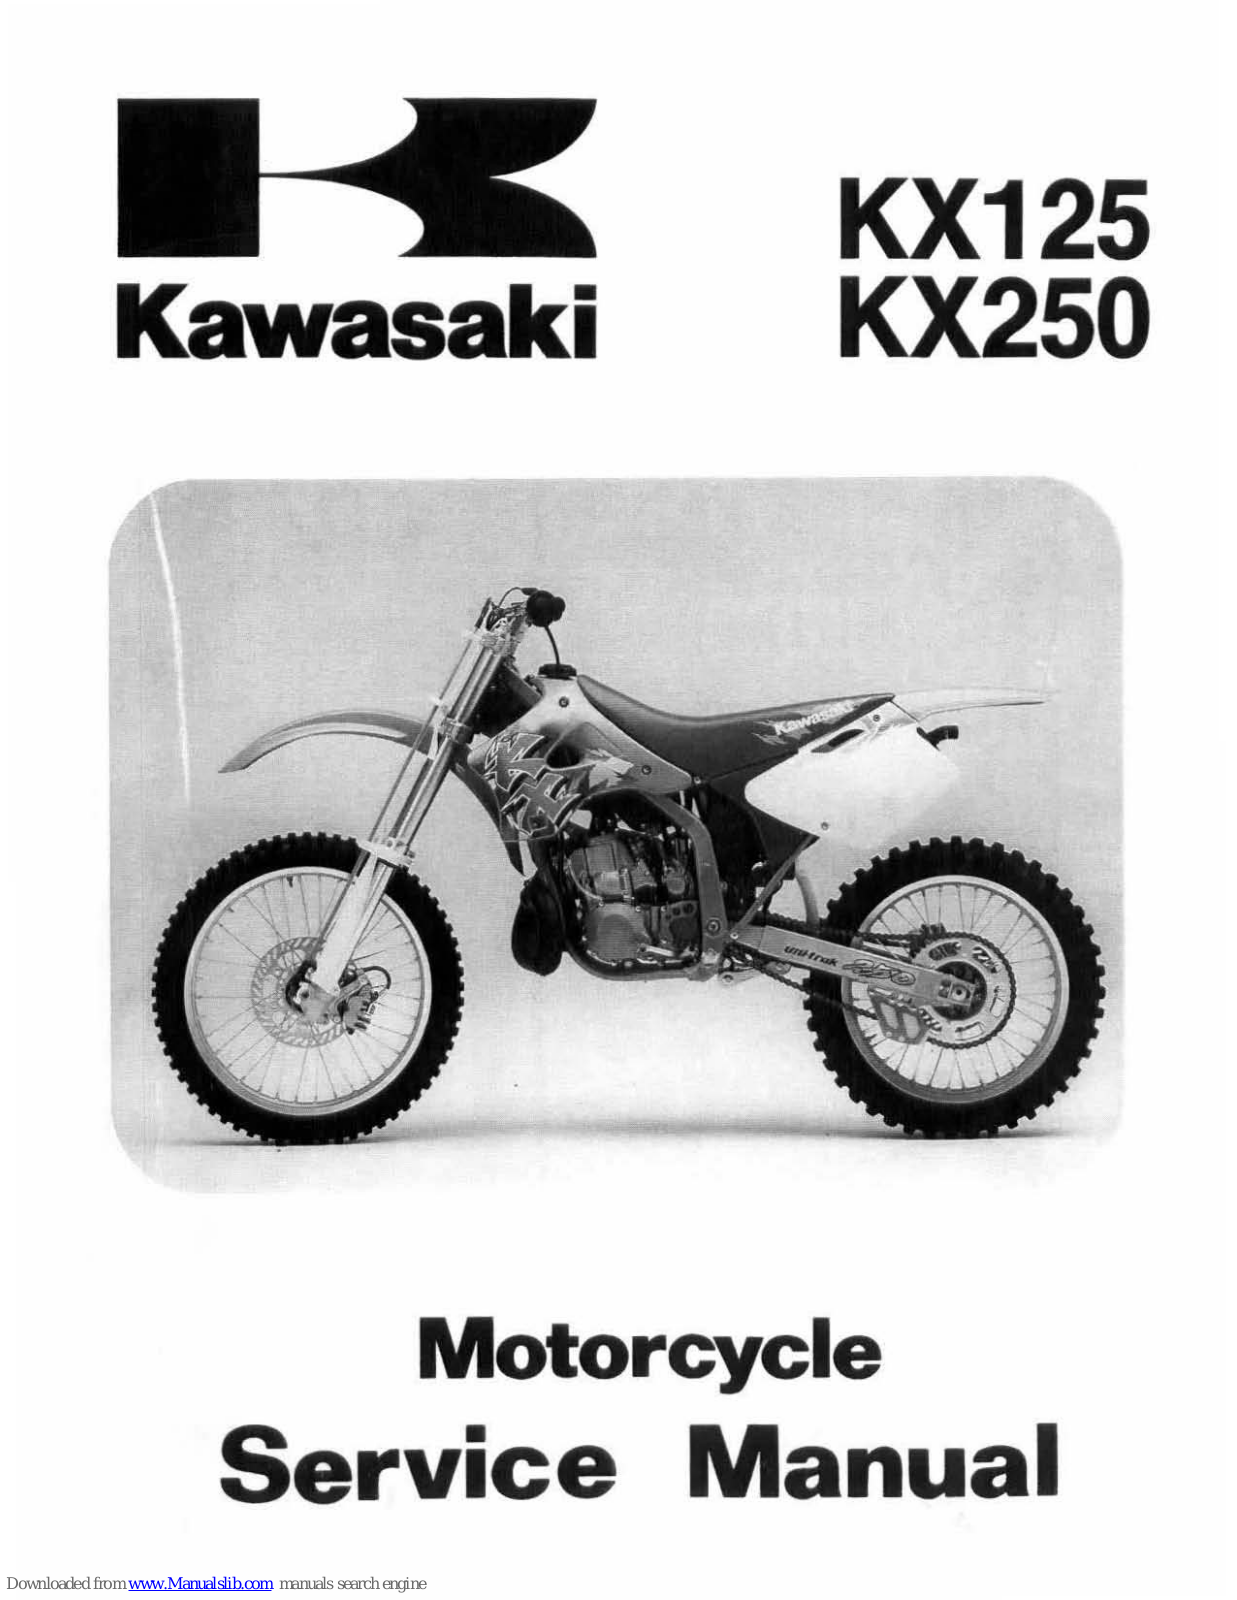 Kawasaki KX125, KX250, 1995 KX125, 1995 KX250, 1996 KX125 Service Manual